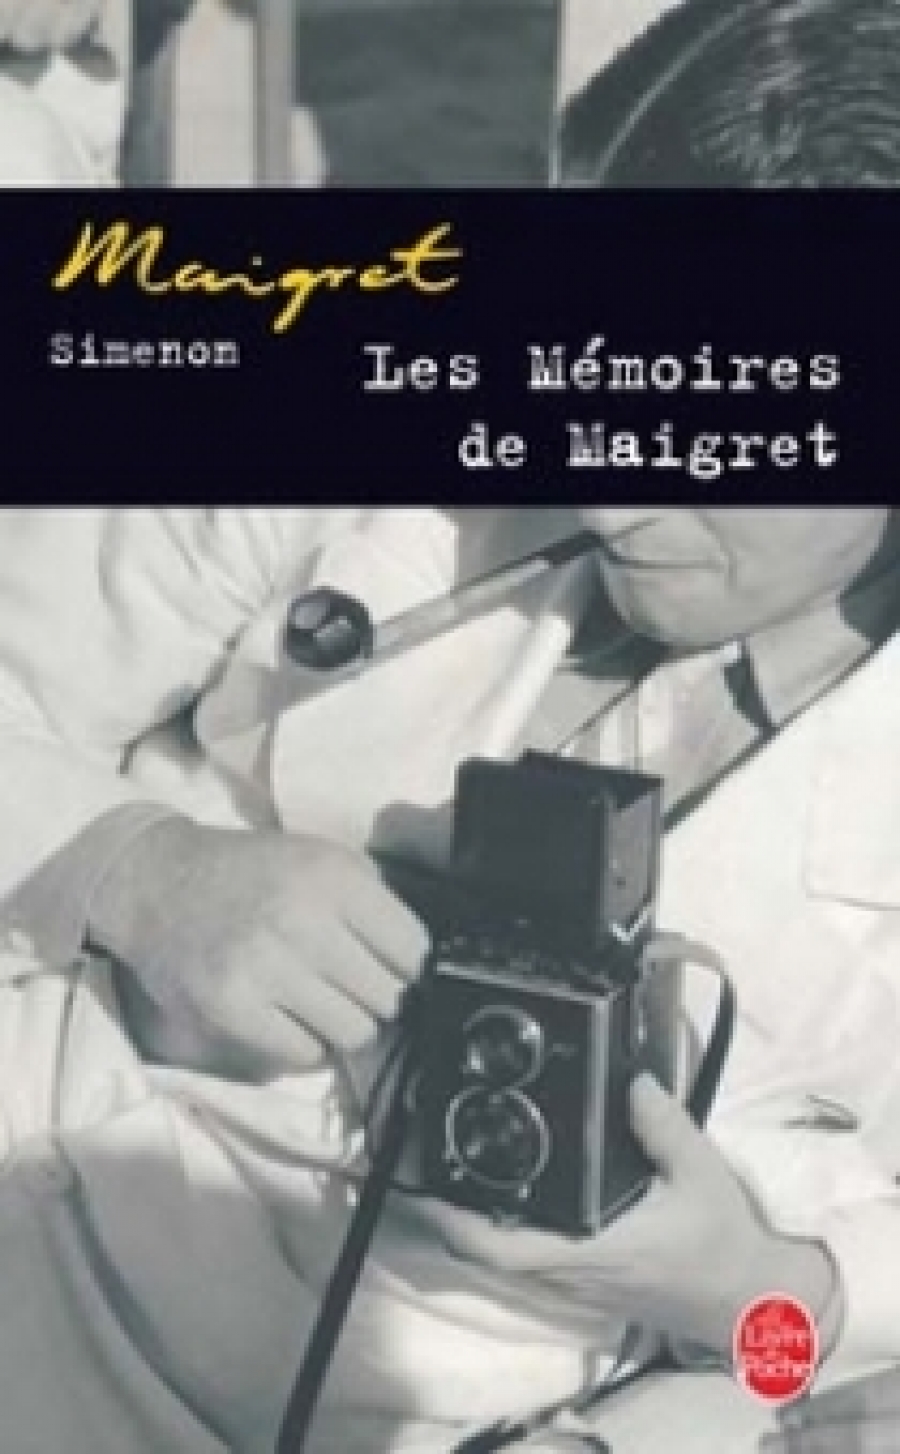 Georges S. Me'moires de Maigret, Les 